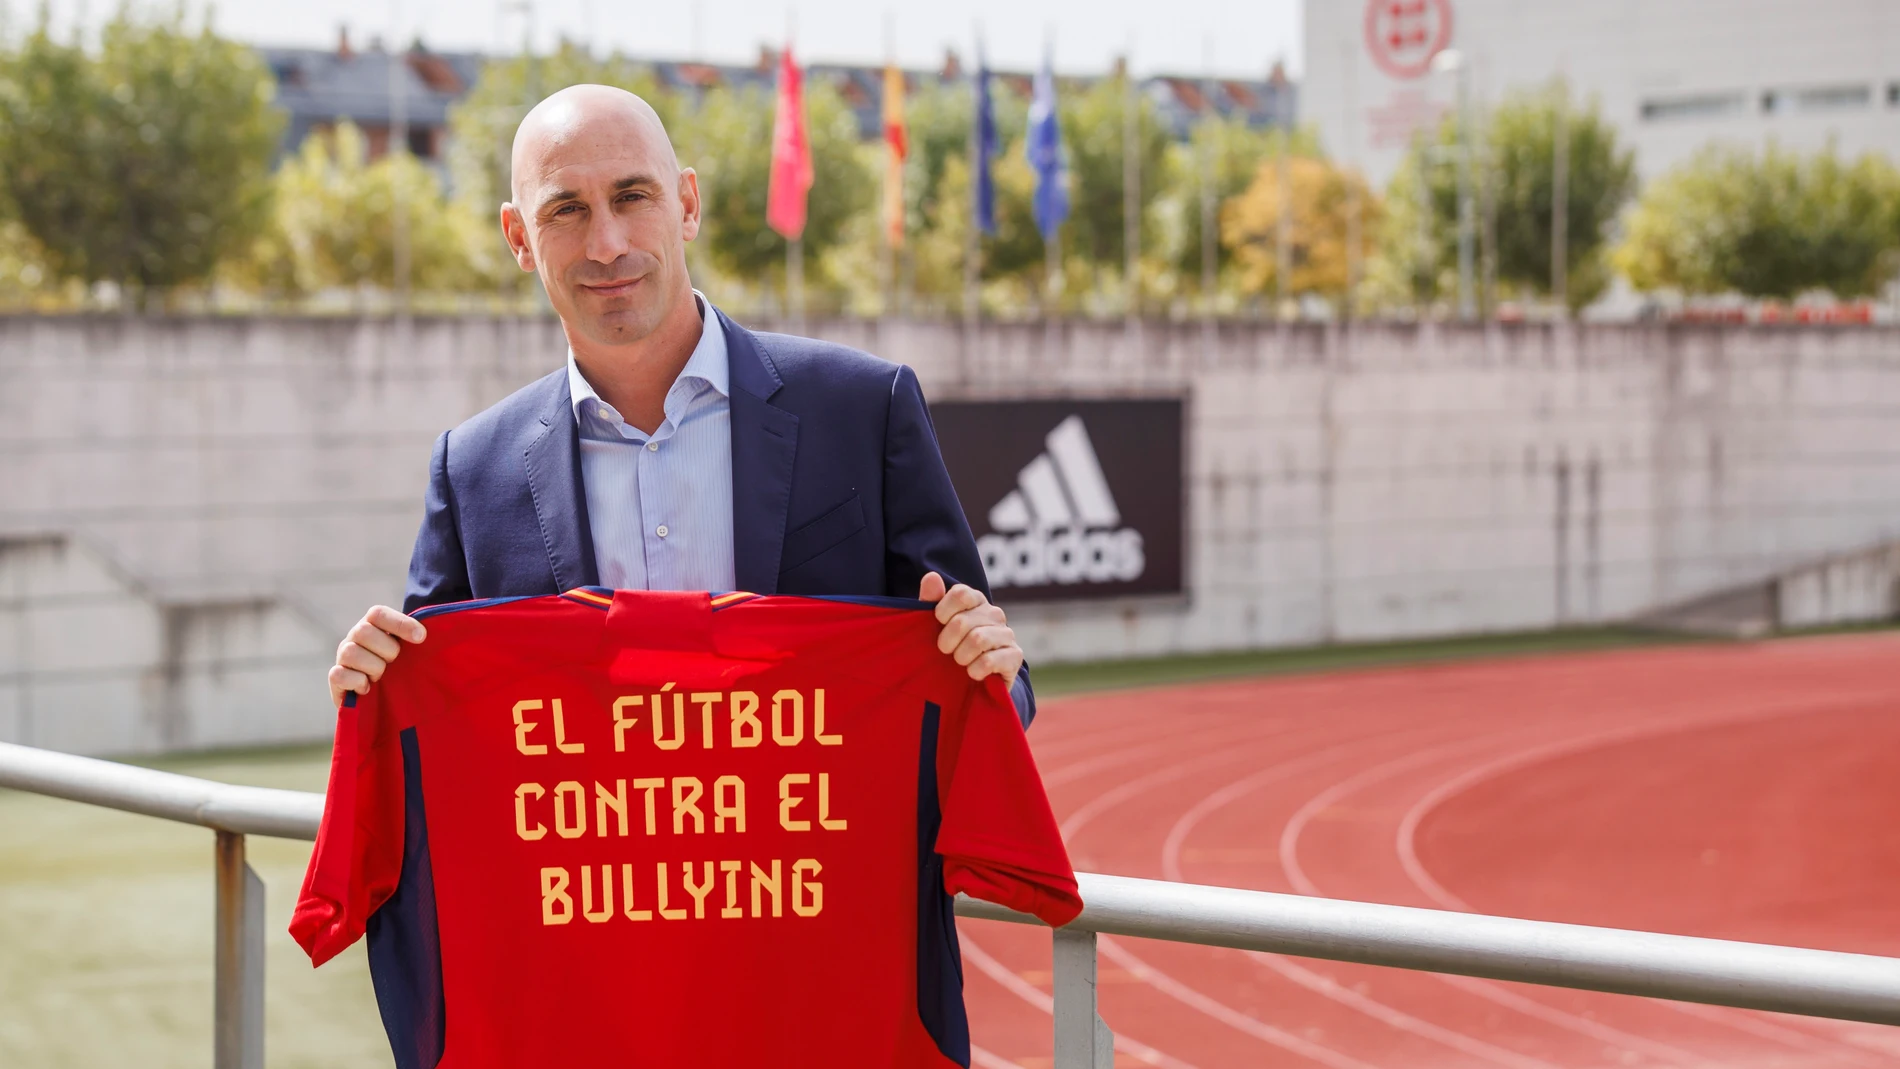 El presidente de la RFEF, Luis Rubiales, posa con la camiseta de la selección española contra el bullying.PABLO GARCÍA/RFEF04/10/2022